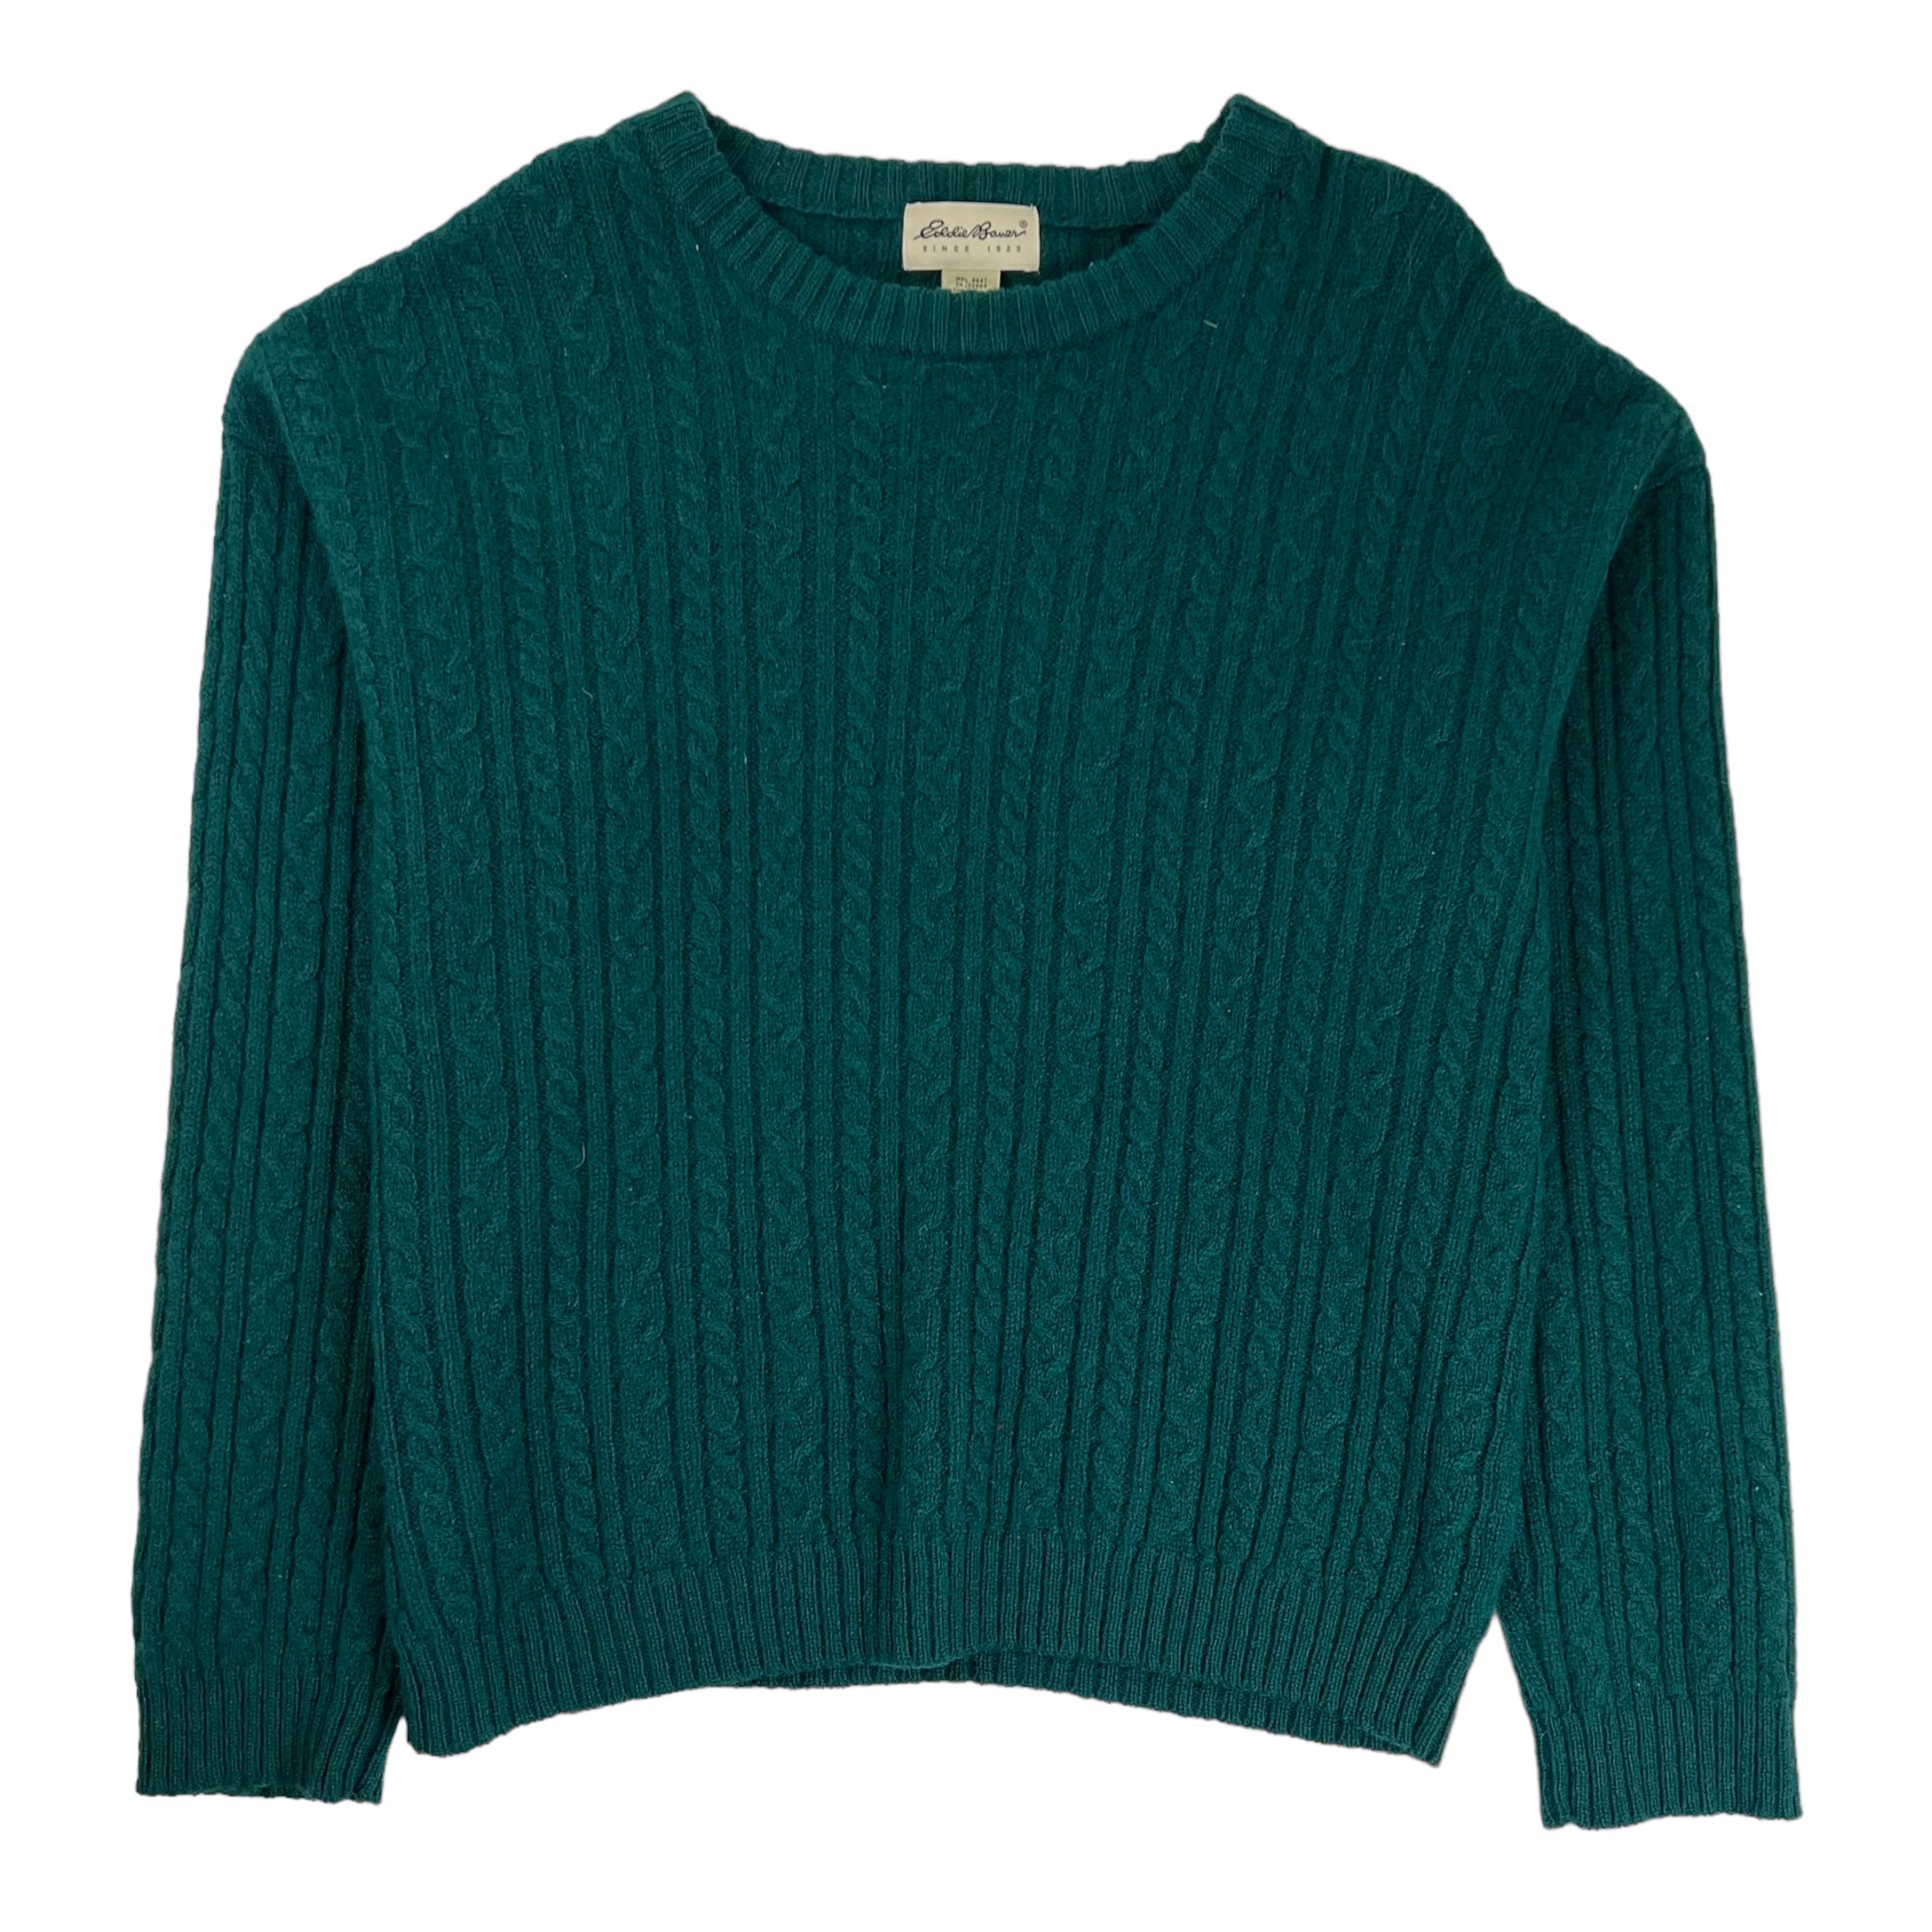 Vintage Eddie Bauer Knit Sweater Green